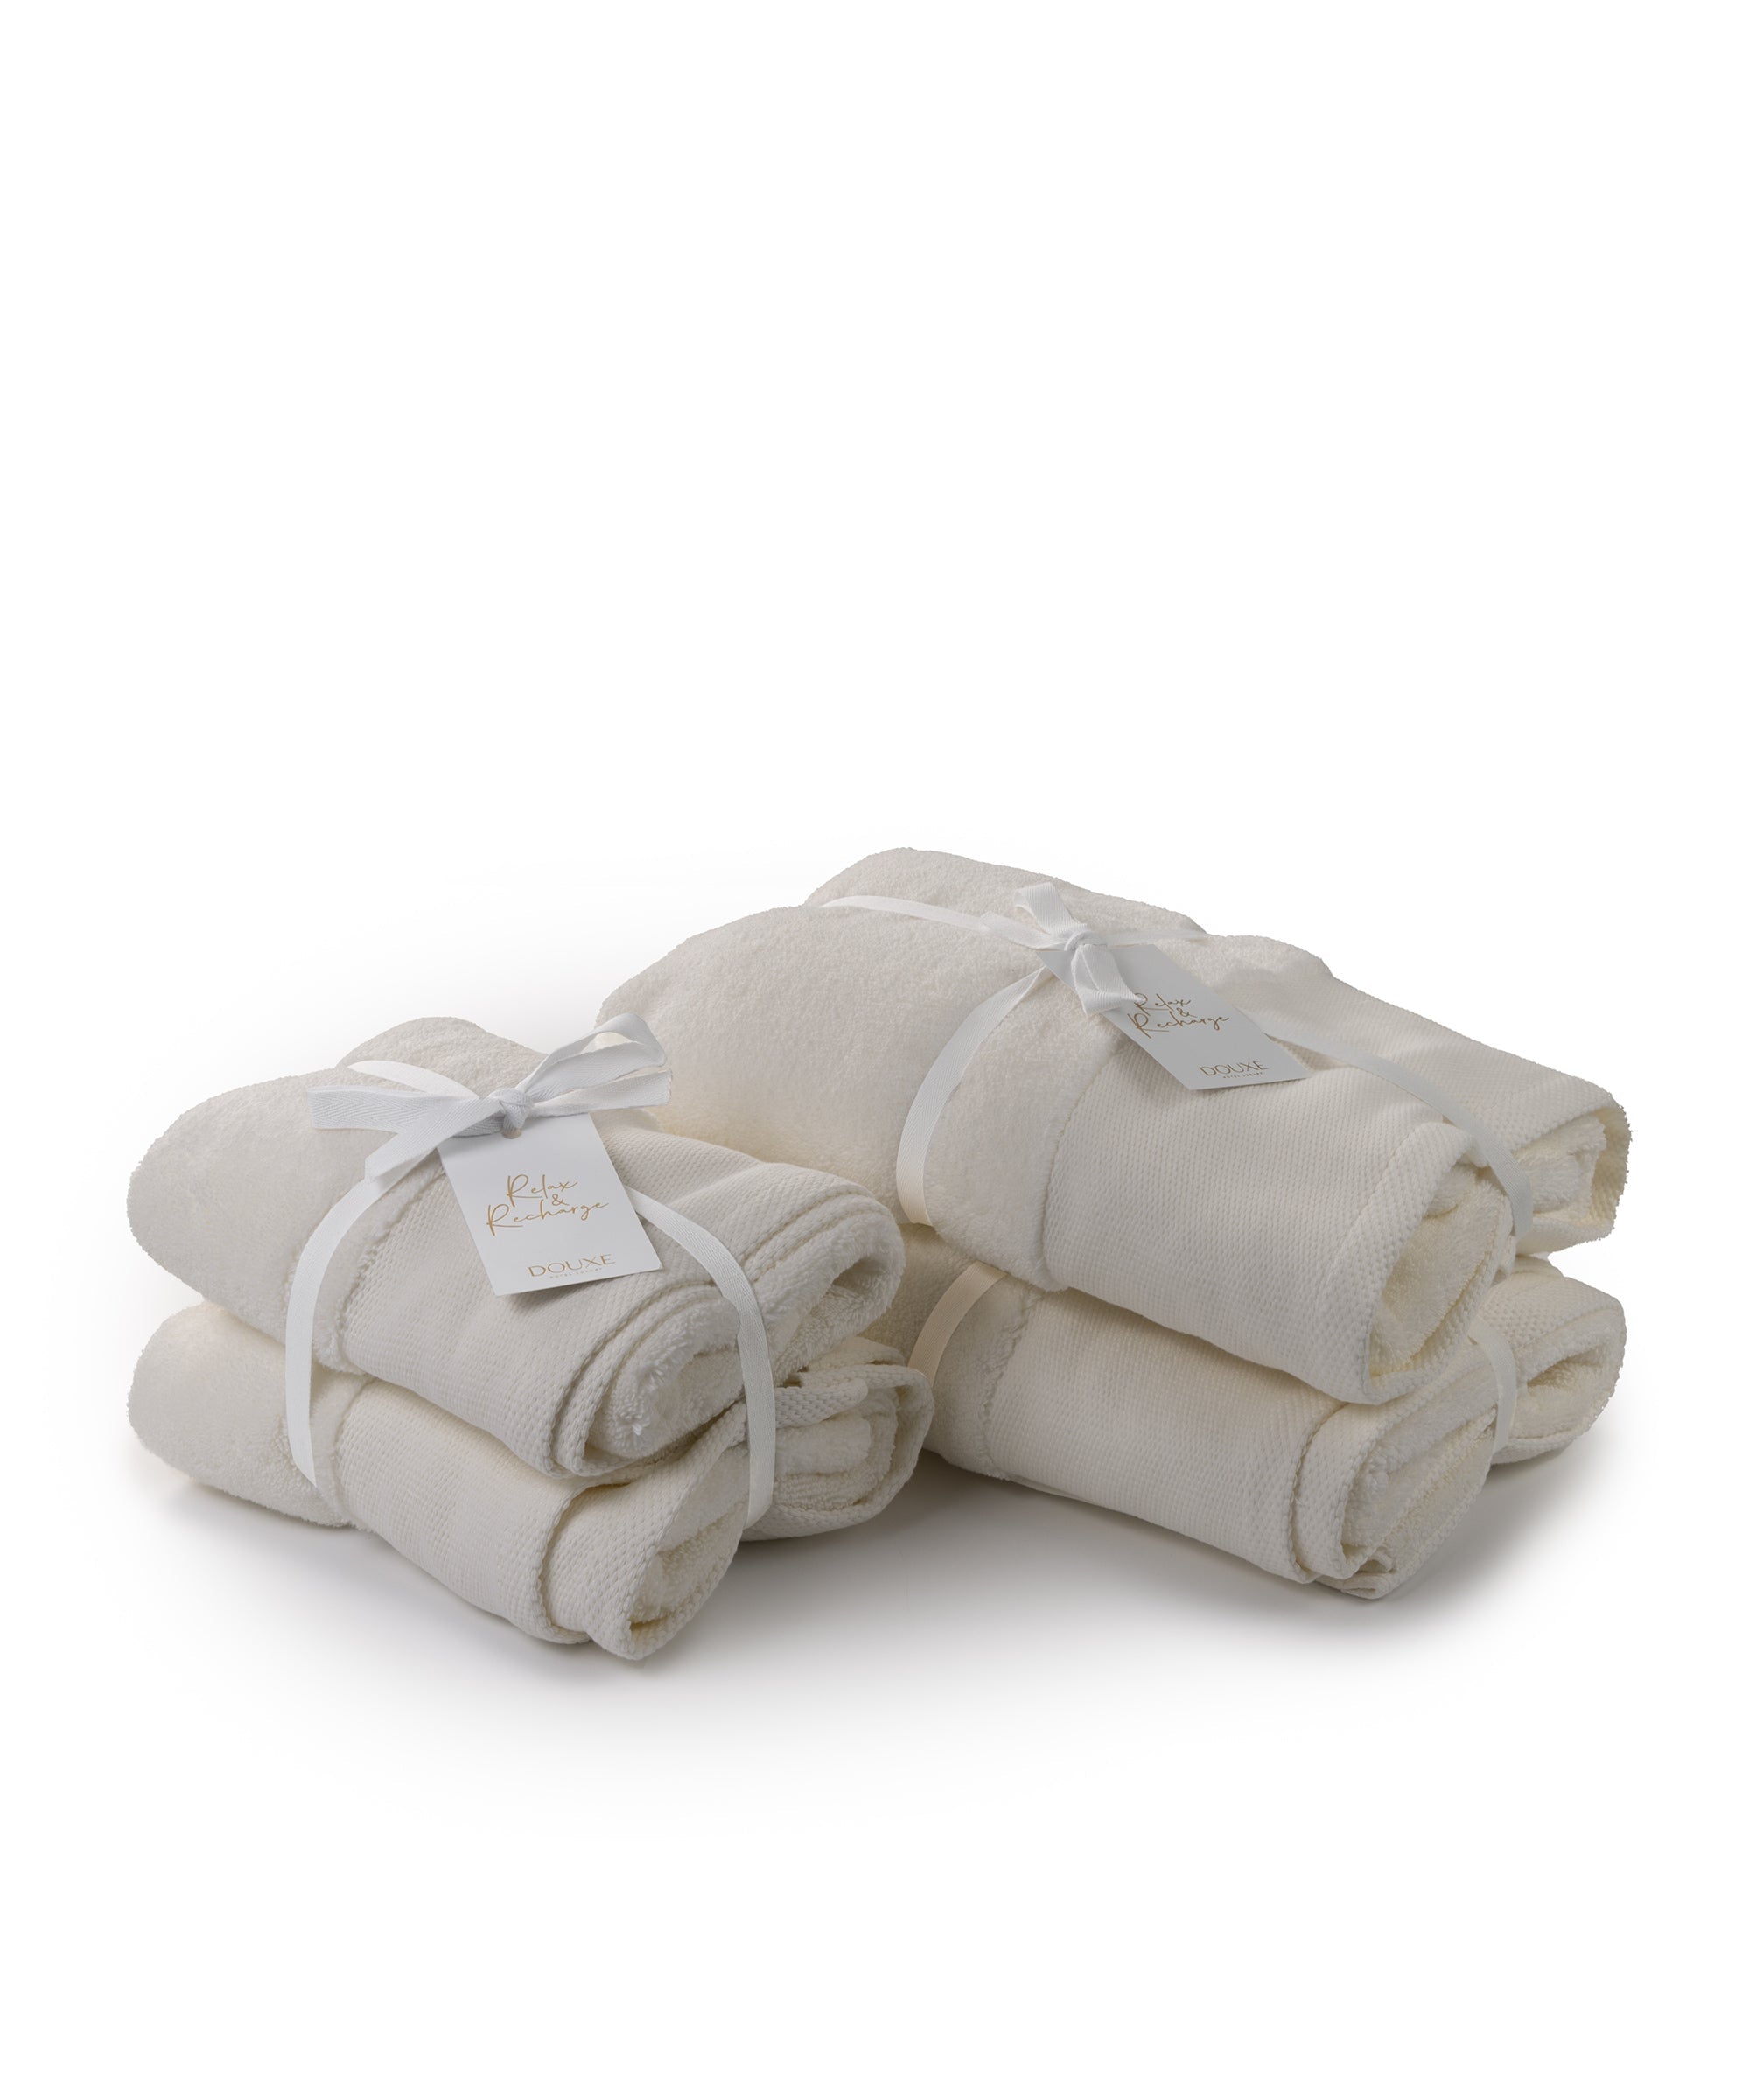 DOUXE Hotel Towel - 50x100 cm - Zero Twist (2 pcs) - Anthracite